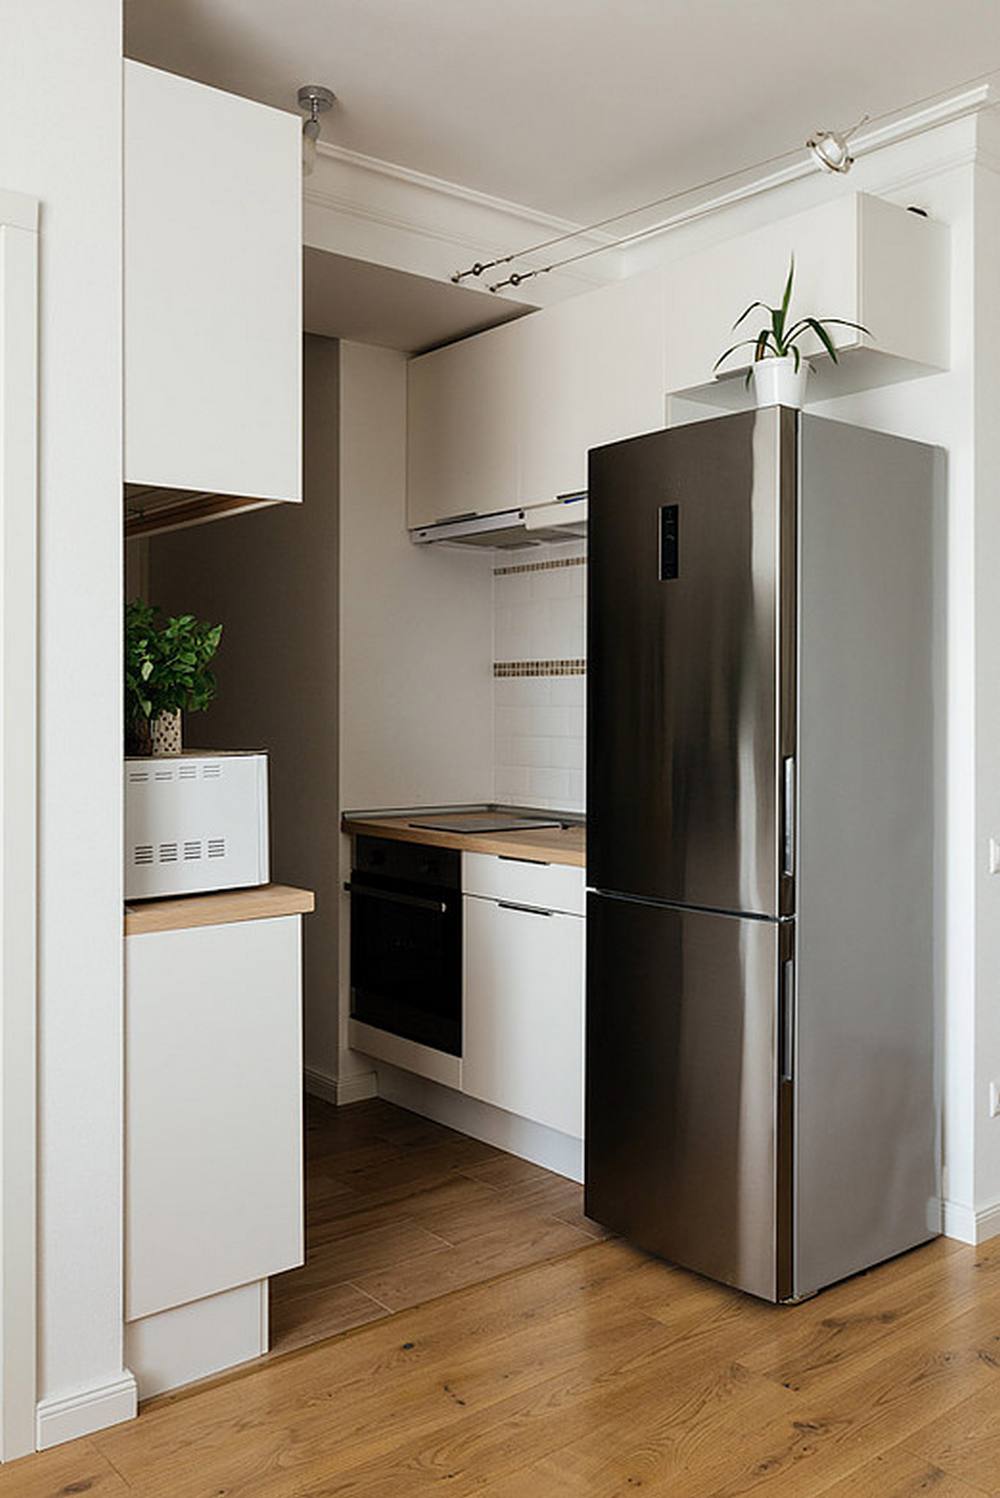 Phòng bếp được bố trí trong góc nhỏ của căn hộ, với hệ thống tủ lưu trữ màu trắng sạch sẽ, cùng với chiếc tủ lạnh cỡ lớn bằng thép không gỉ sáng bóng phản chiếu ánh sáng trên bề mặt thiết bị.